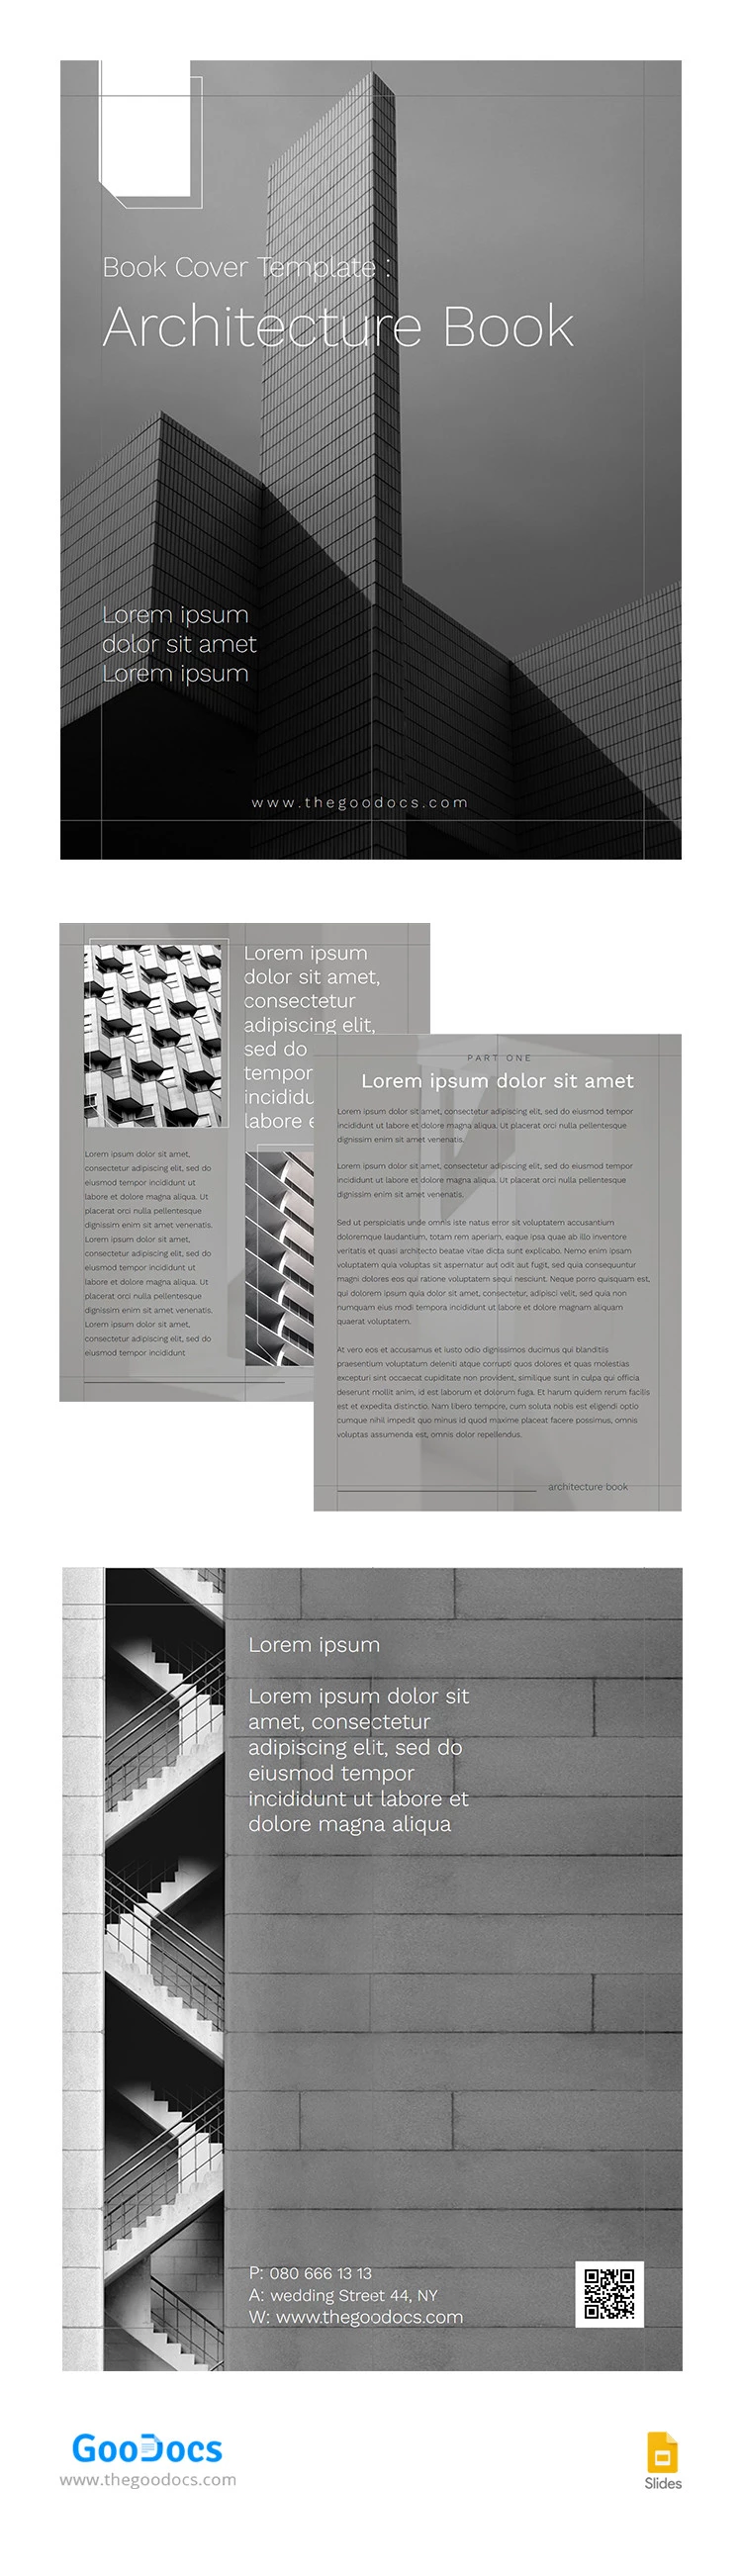 Livro de Arquitetura Estilosa em Cinza - free Google Docs Template - 10065665